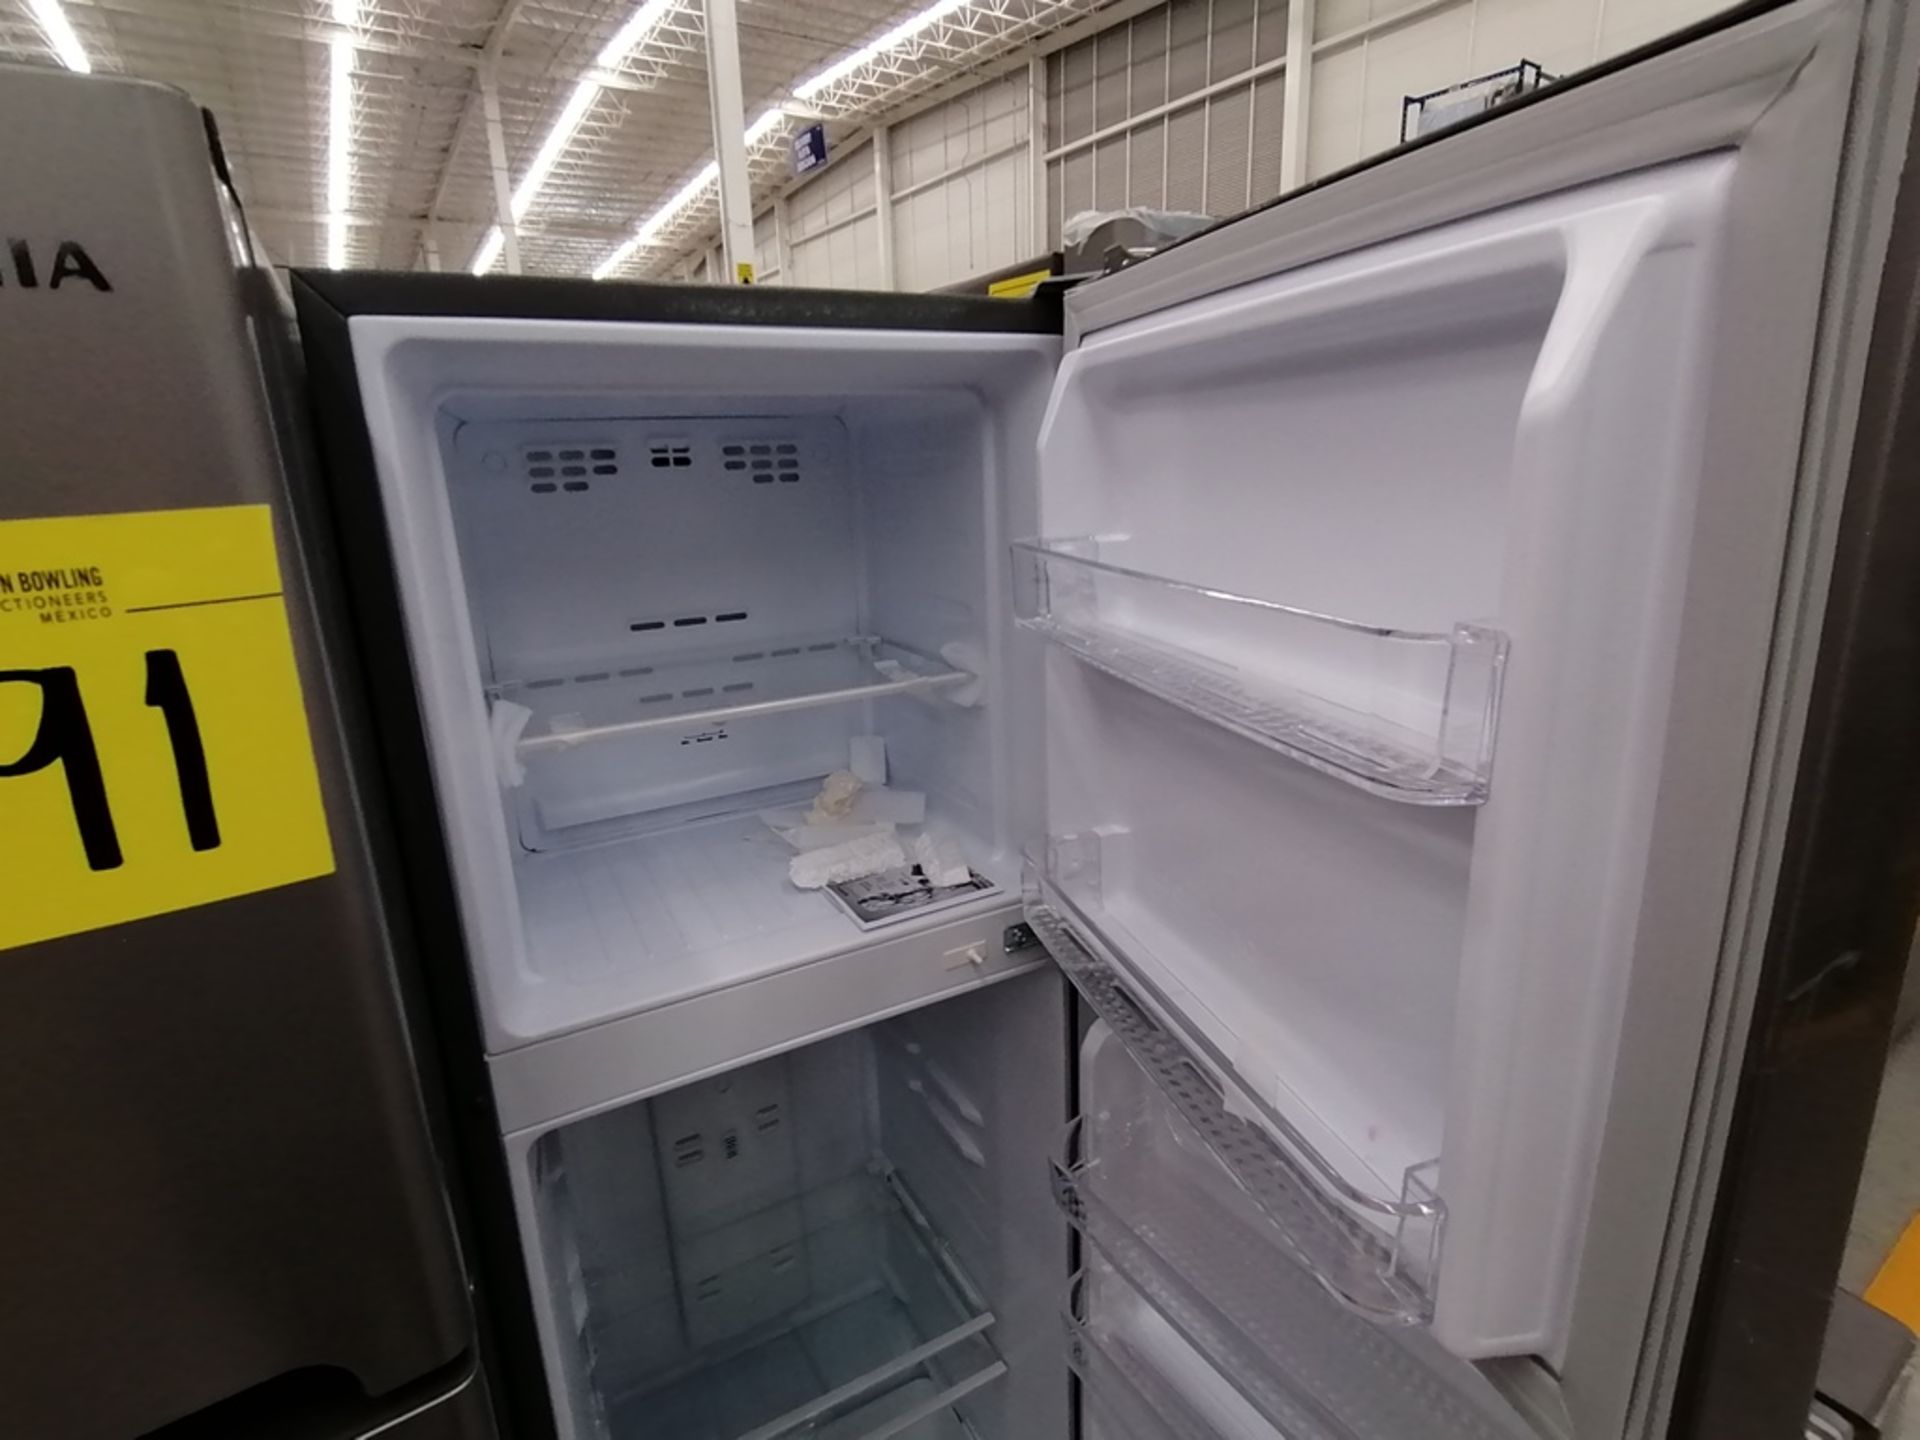 Lote de 2 Refrigeradores incluye: 1 Refrigerador, Marca Winia, Modelo DFR25120GN, Serie MR219N11624 - Image 13 of 15